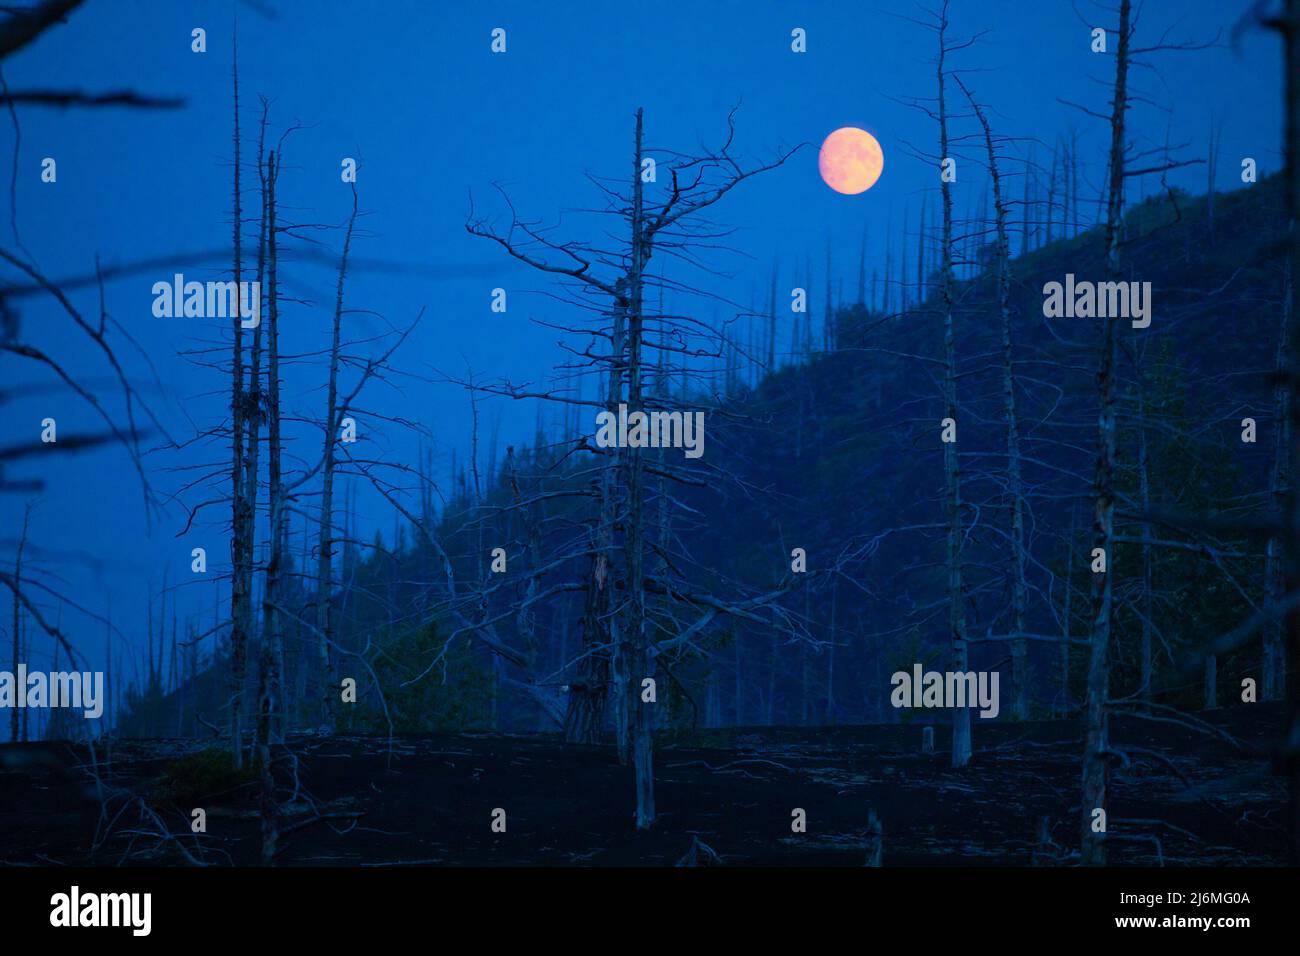 La cosiddetta foresta morta vicino al vulcano Tollbachik di notte con luna piena, Russia Foto Stock